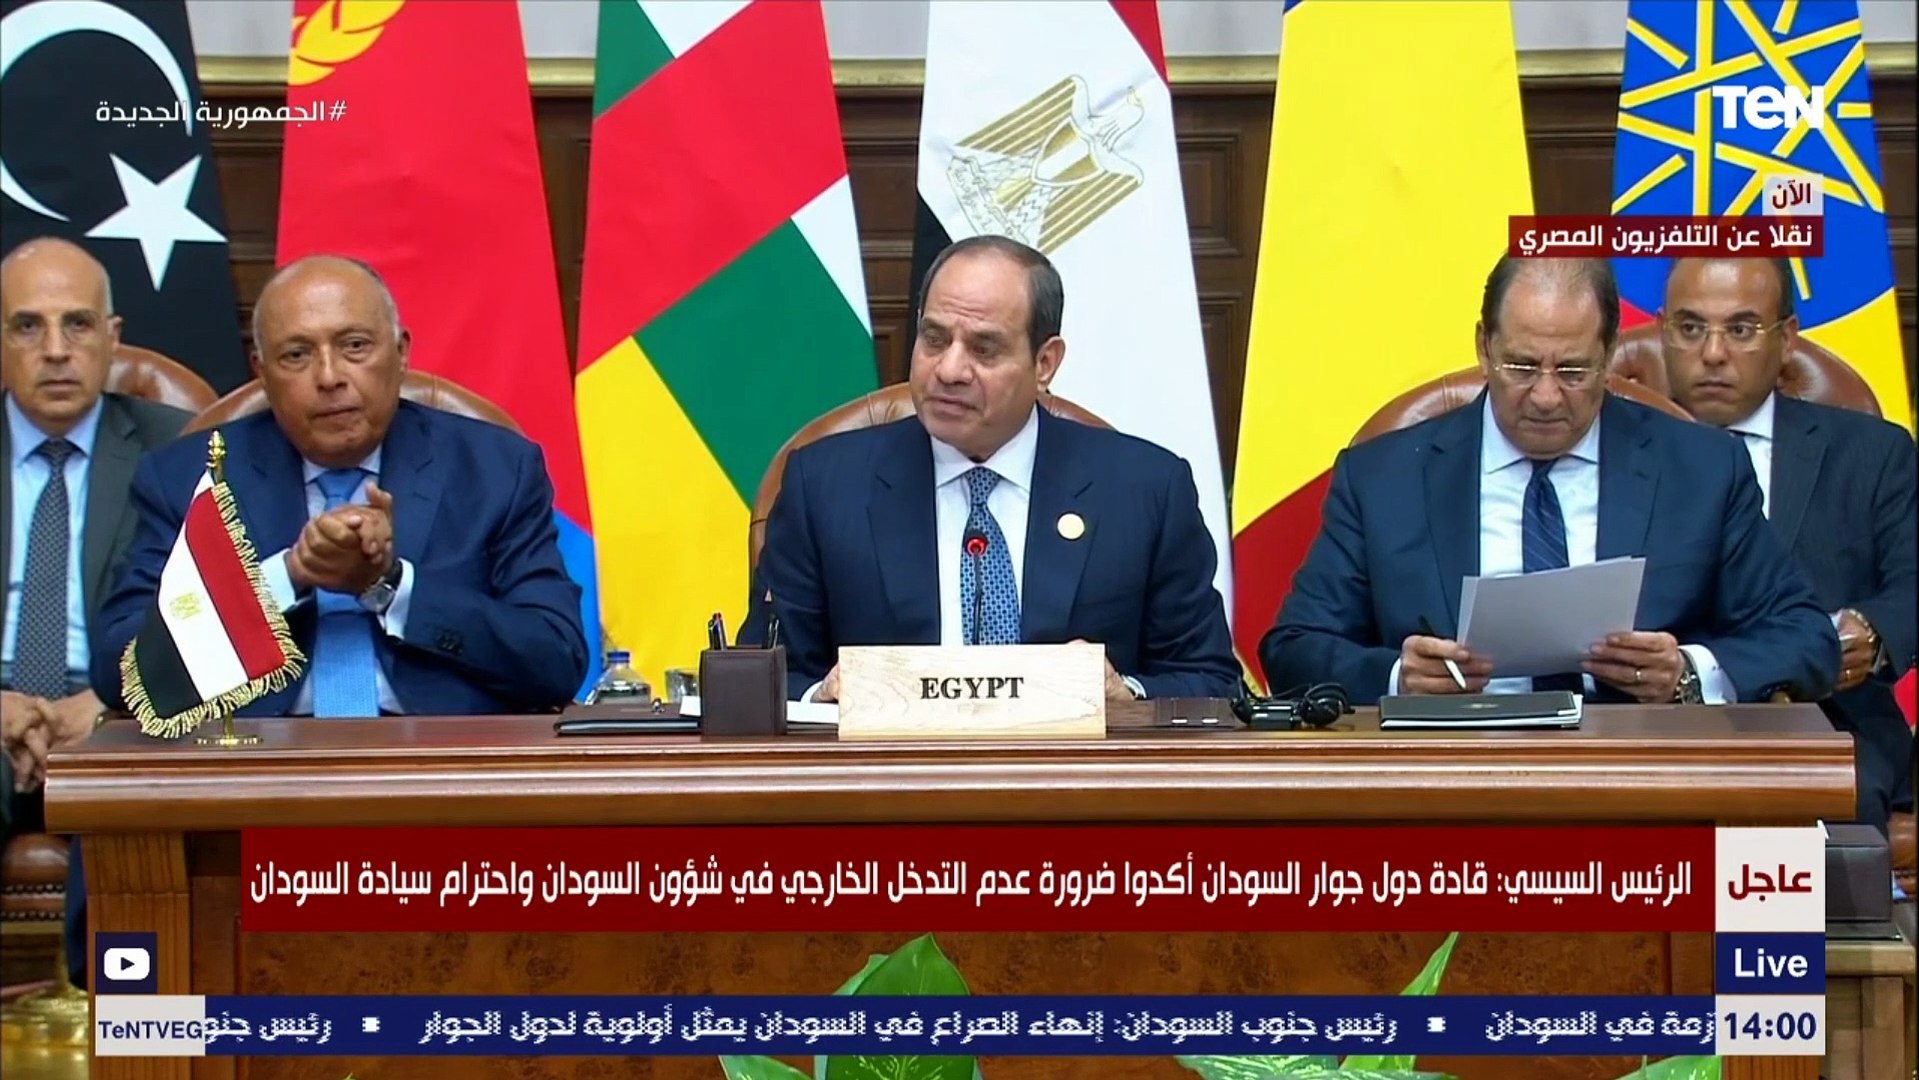 السيسي: قادة دول جوار السودان يؤكدون أهمية التعامل مع الأزمة السودانية  بتبعاتها الإنسانية - فيديو Dailymotion